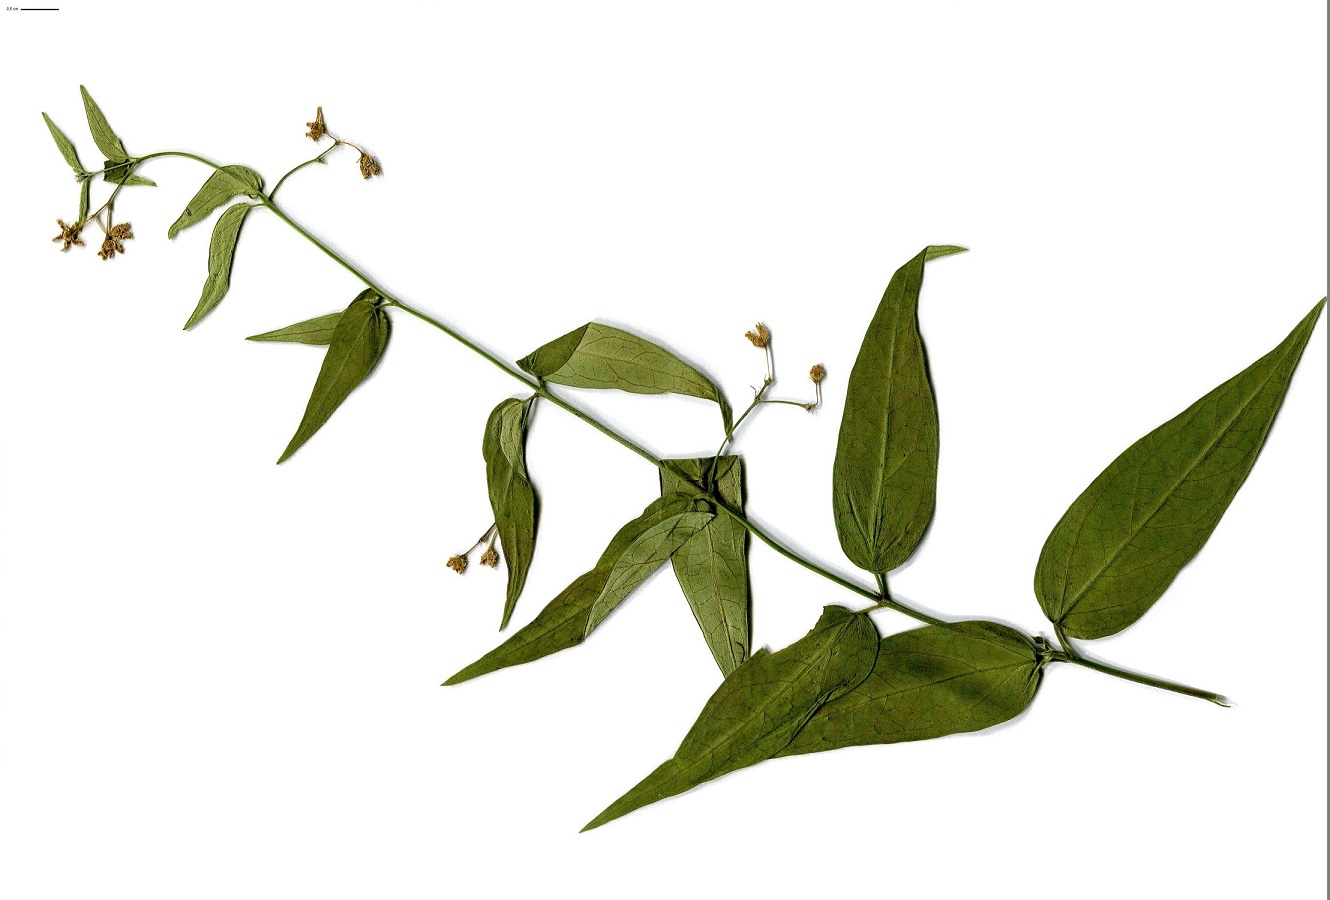 Vincetoxicum hirundinaria (Apocynaceae)